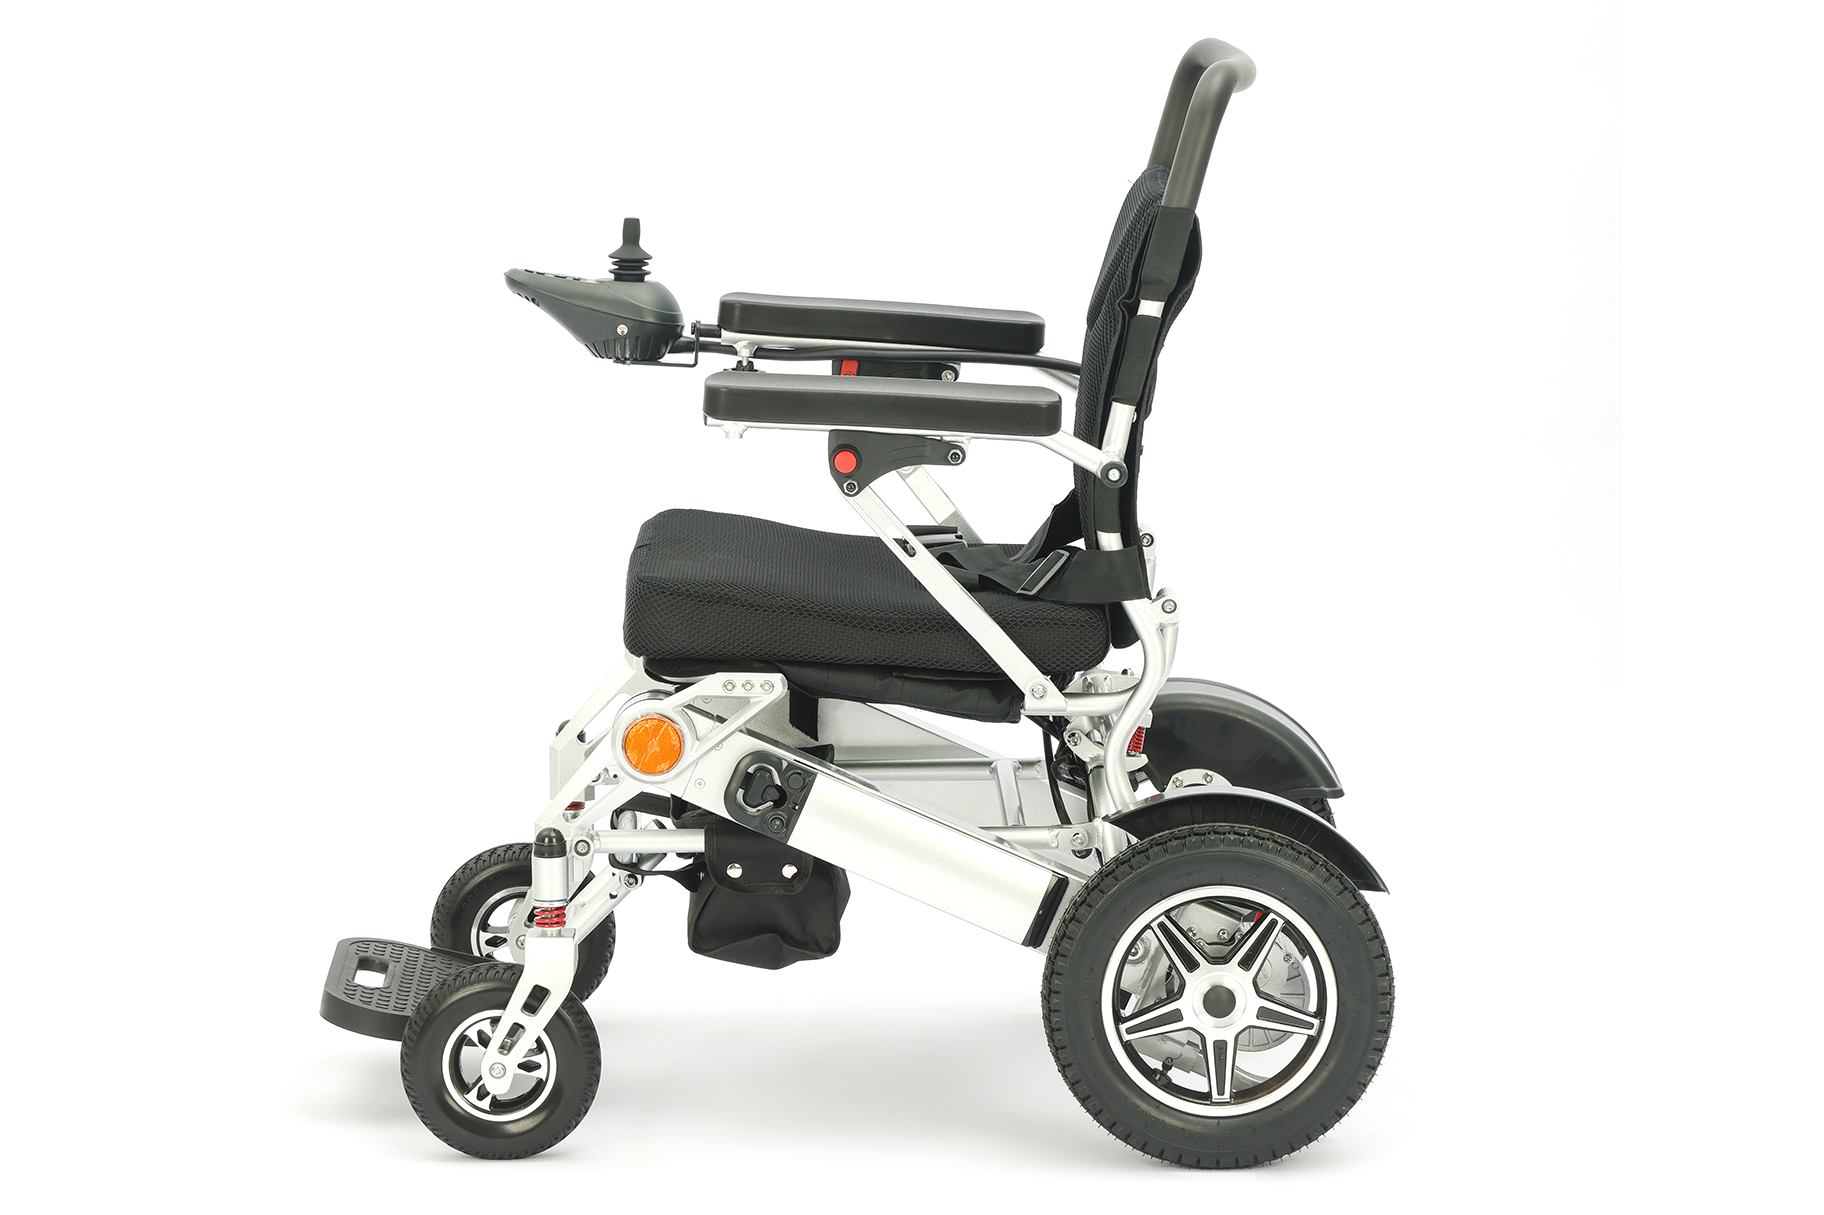 De opkomst van lichtgewicht elektrische rolstoelen uit aluminiumlegeringen heeft het probleem van reisproblemen voor ouderen en gehandicapten opgelost